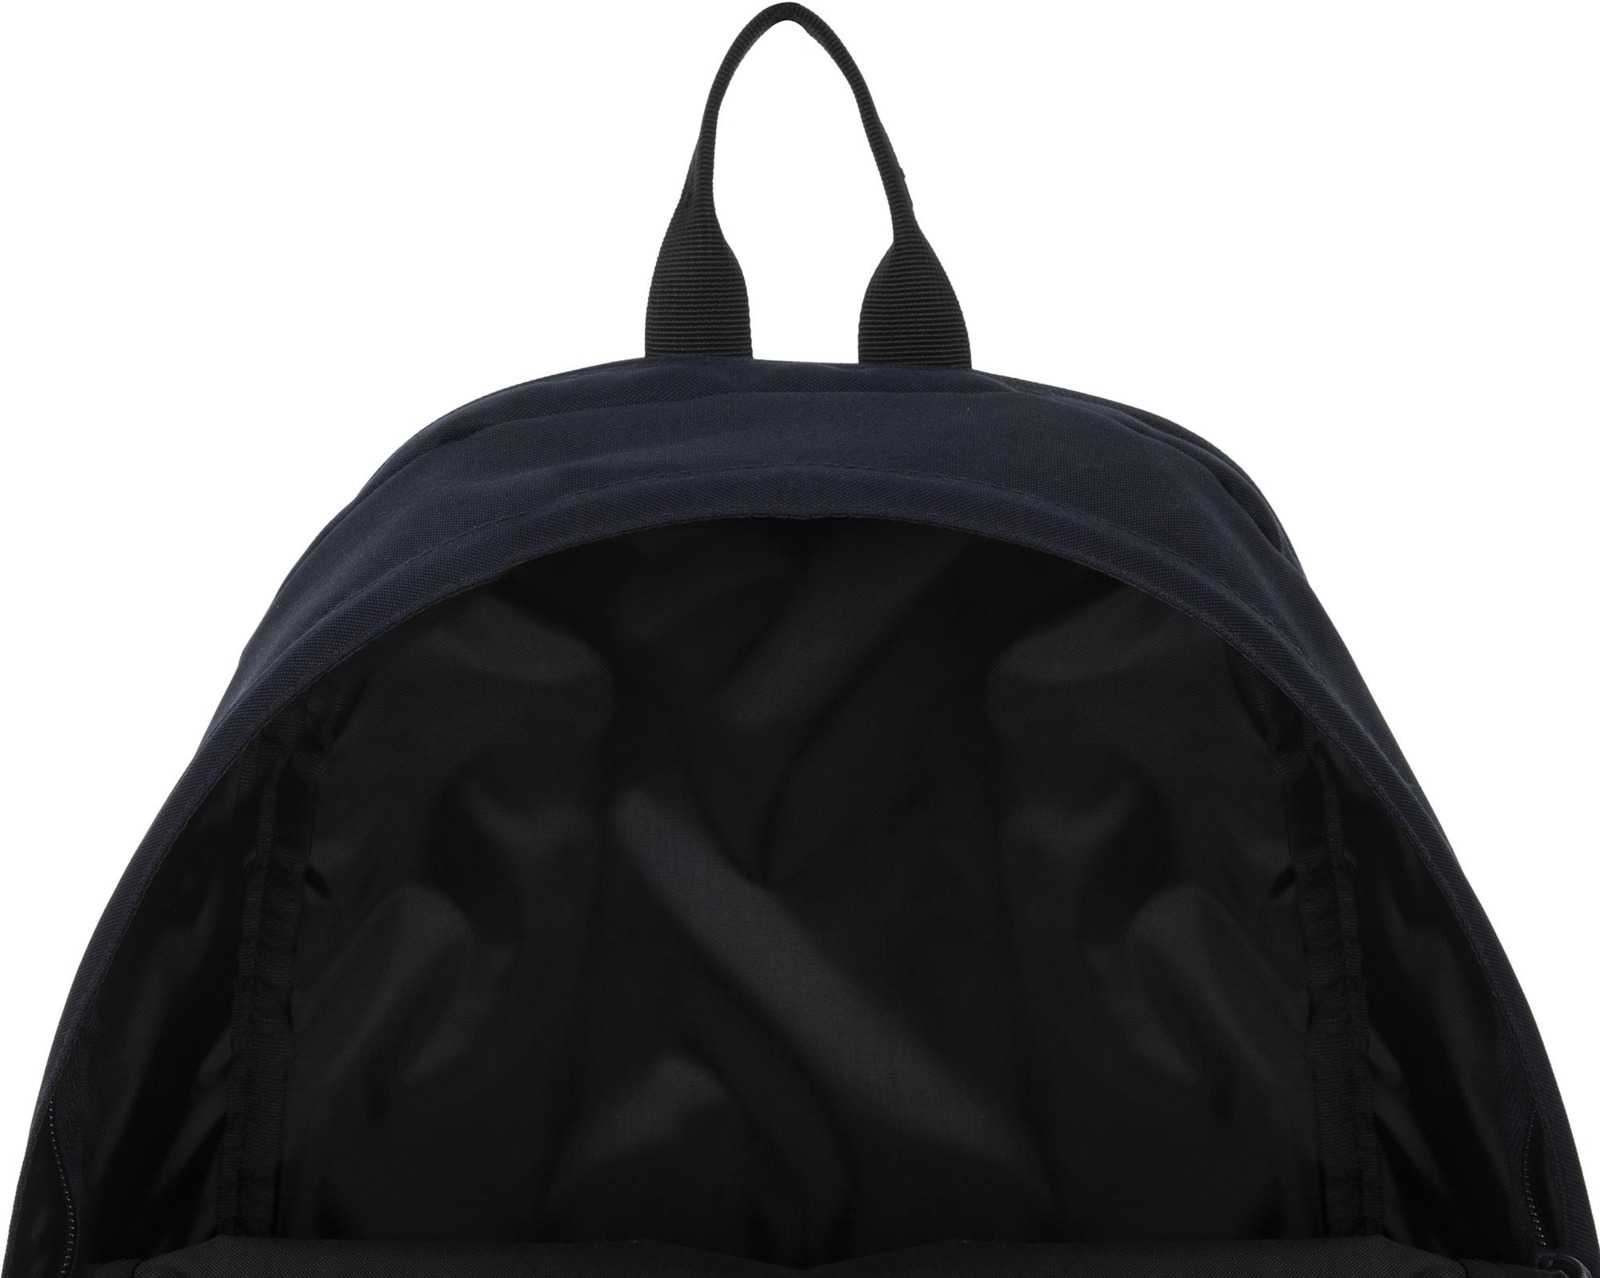 фото Рюкзак Fila Adult Backpack, S19AFLRSU01-Z4, 20 л, темно-синий